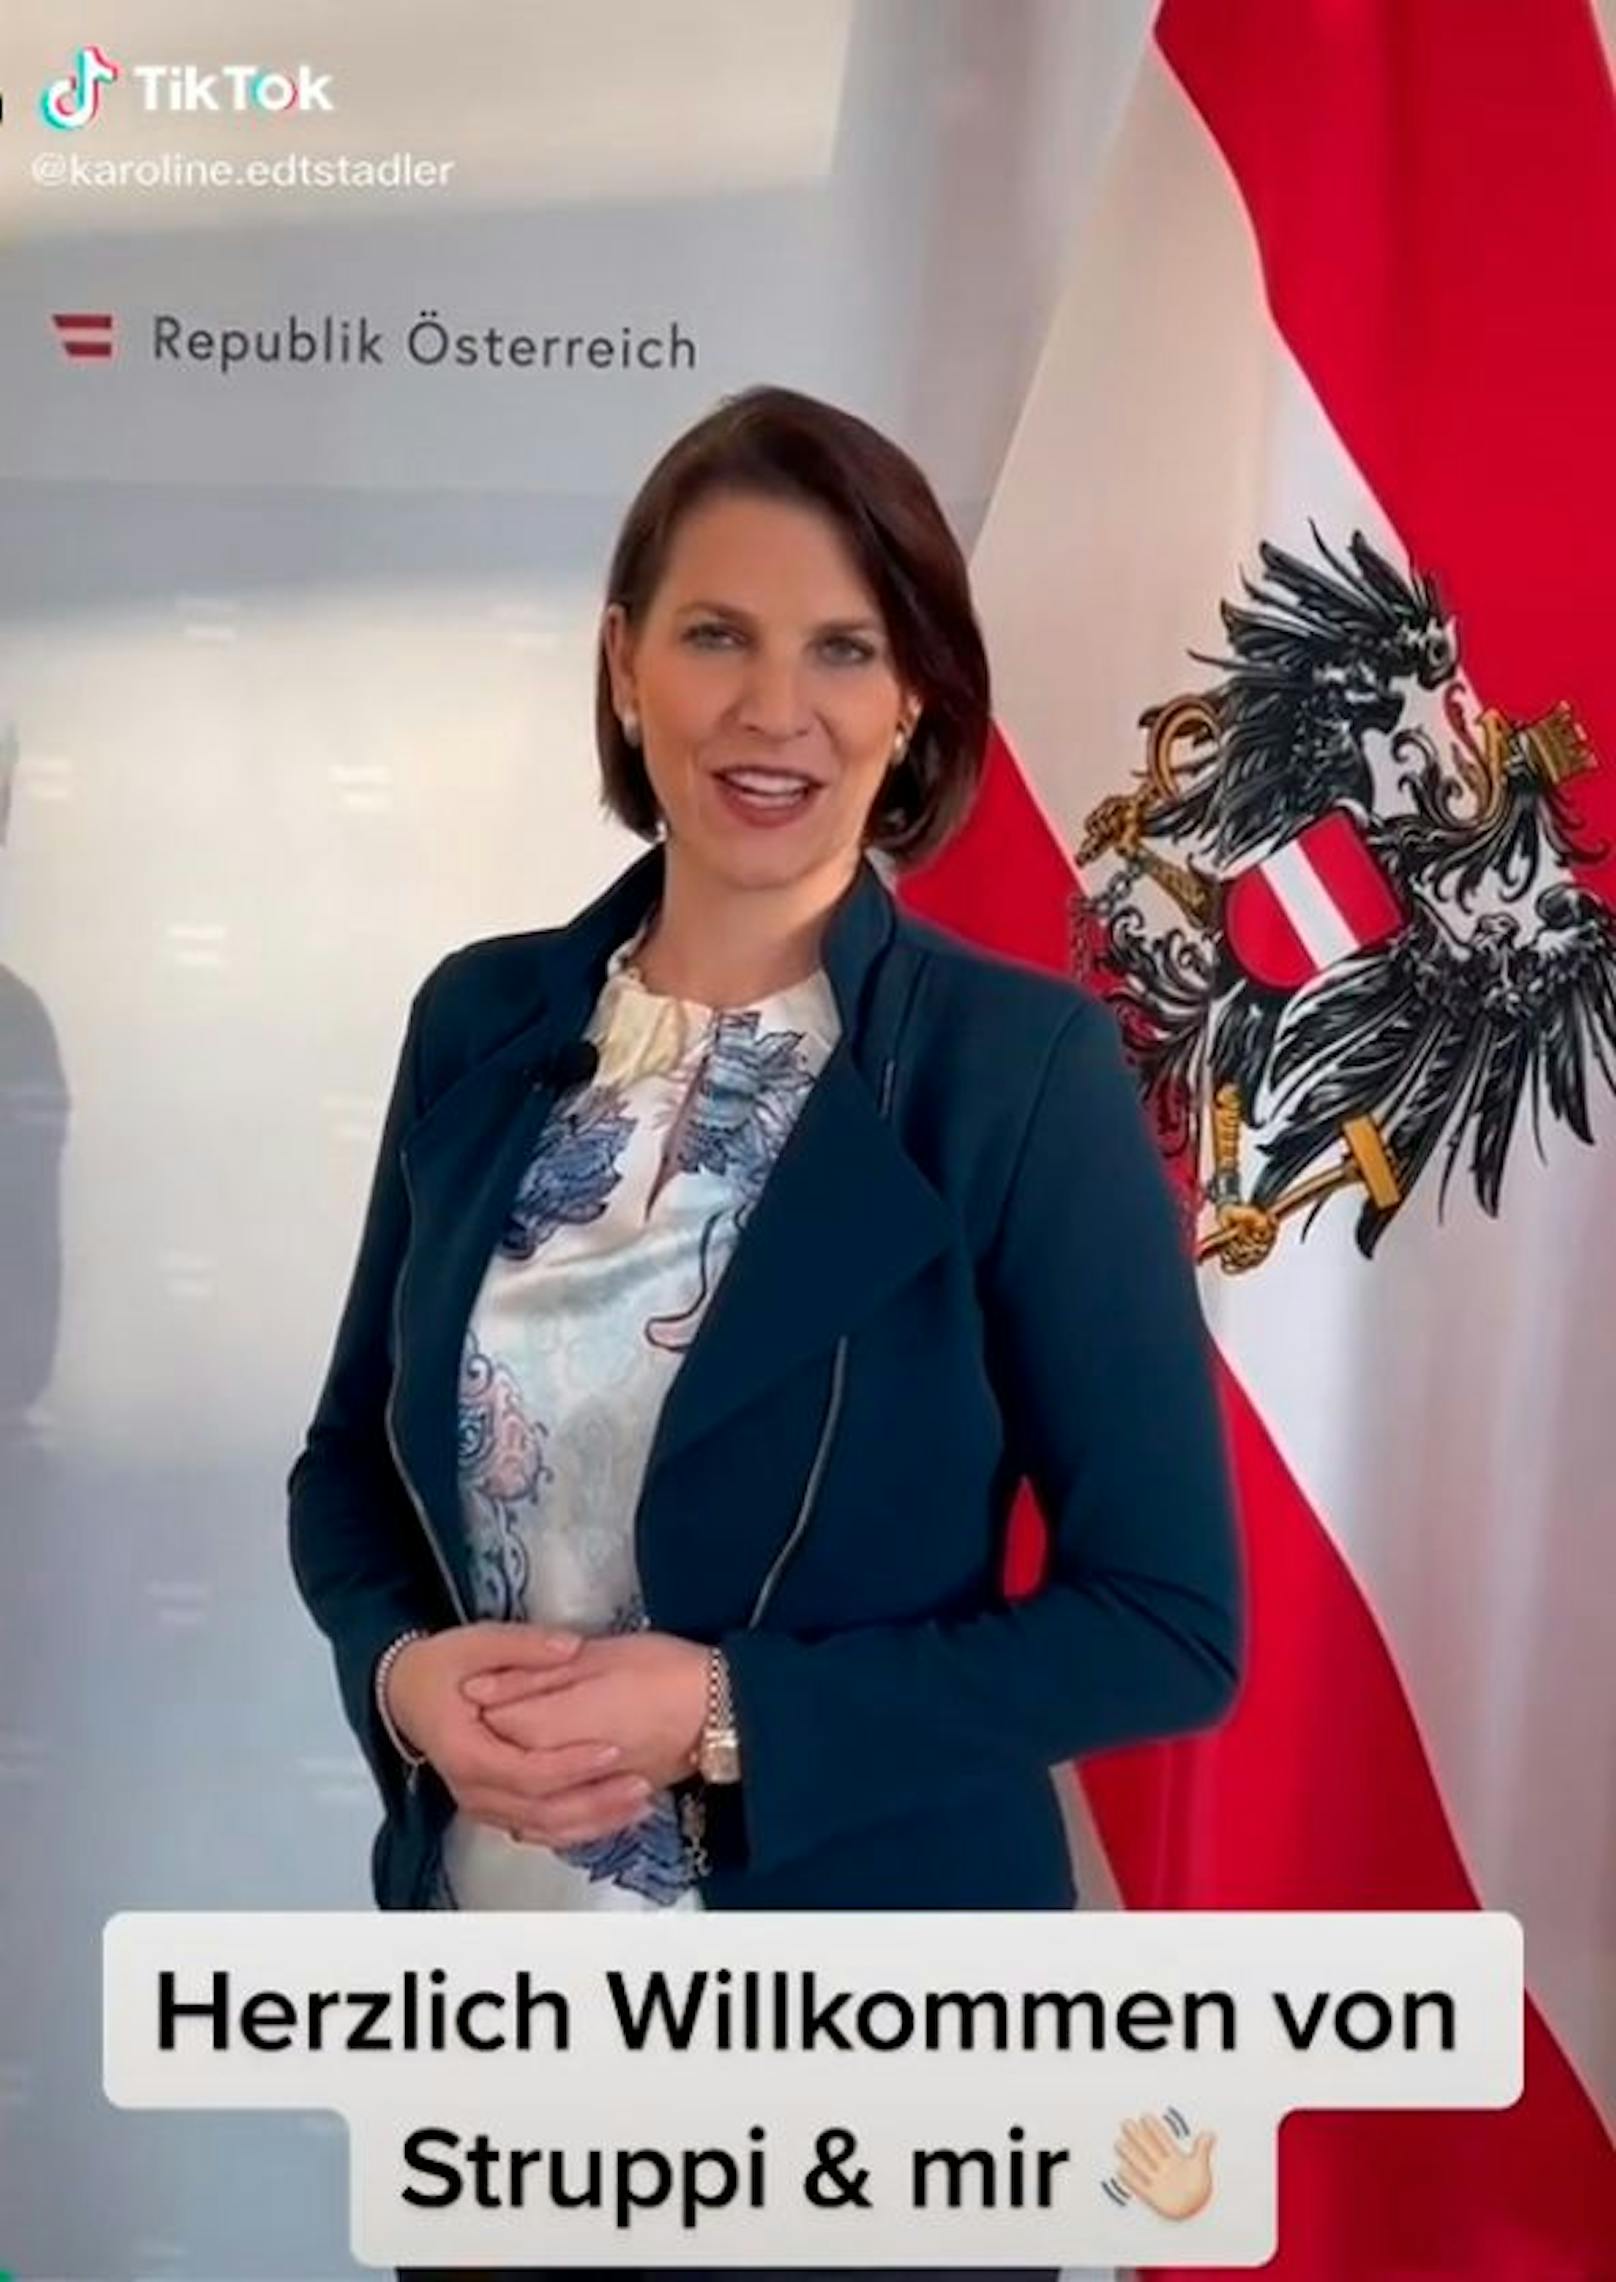 Verfassungsministerin Karoline Edtstadler (ÖVP) gibt auf TikTok ab sofort Einblicke hinter die Kulissen des Bundeskanzleramts.